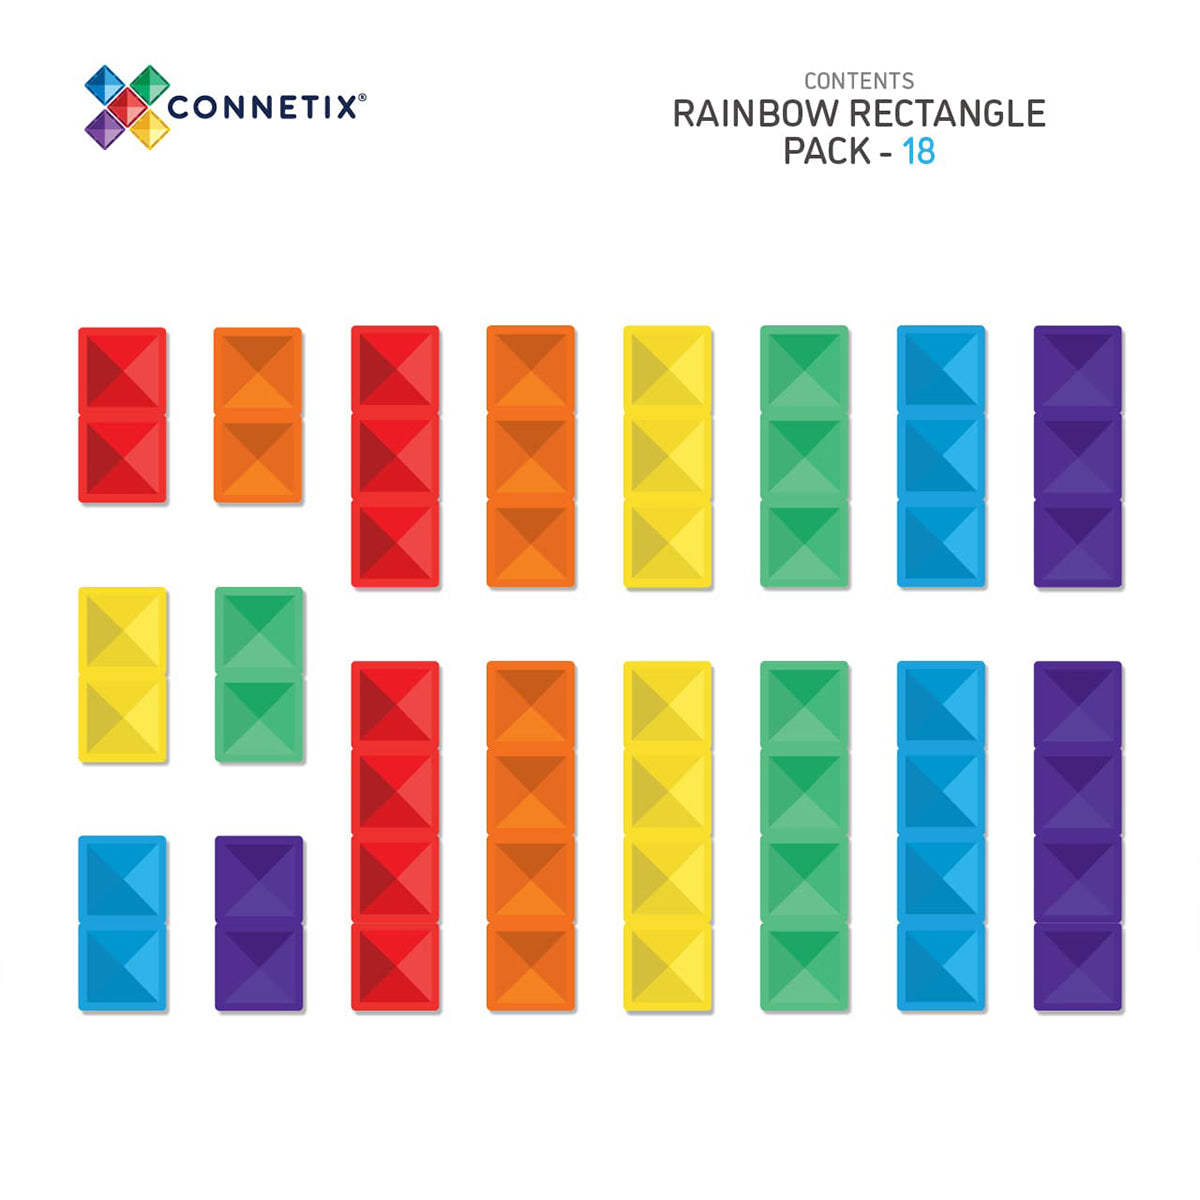 Vergroot het speelplezier van je kleintje met deze mooie glinsterende Connetix rainbow rectangle pack 18 stuks! Met deze bouwset kan je kindje de mooiste bouwwerken maken. De tegels hebben allemaal een vrolijke kleur. VanZus